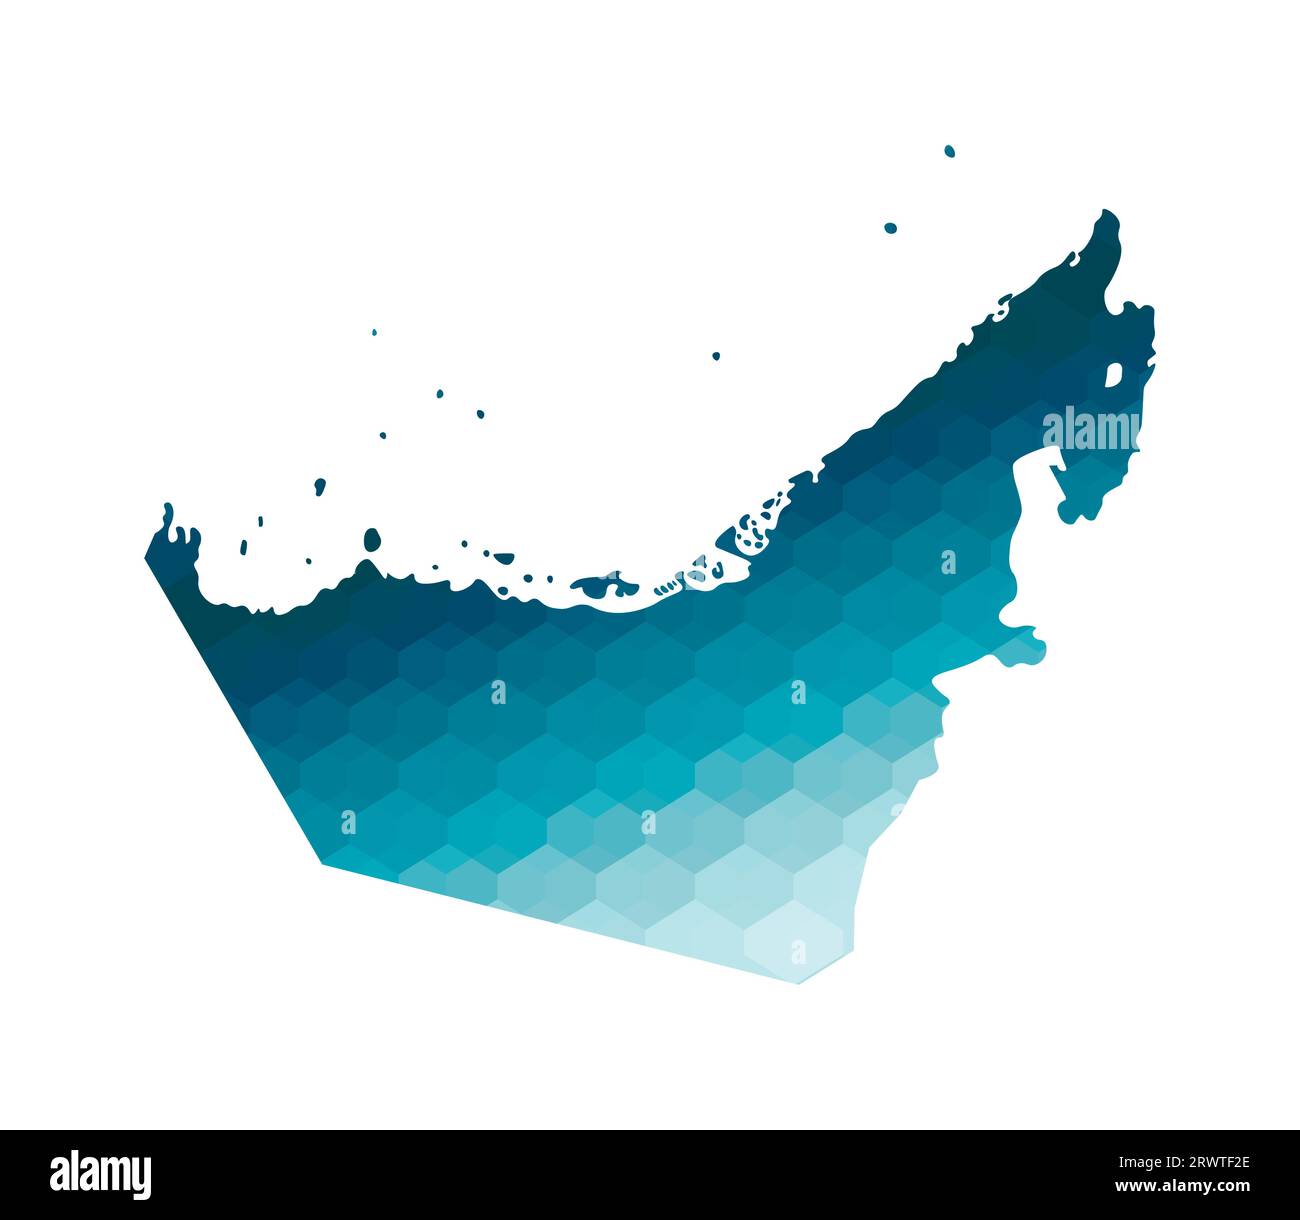 Icône d'illustration isolée vectorielle avec silhouette bleue simplifiée de la carte des Émirats arabes Unis (eau). Style géométrique polygonal. Fond blanc Illustration de Vecteur